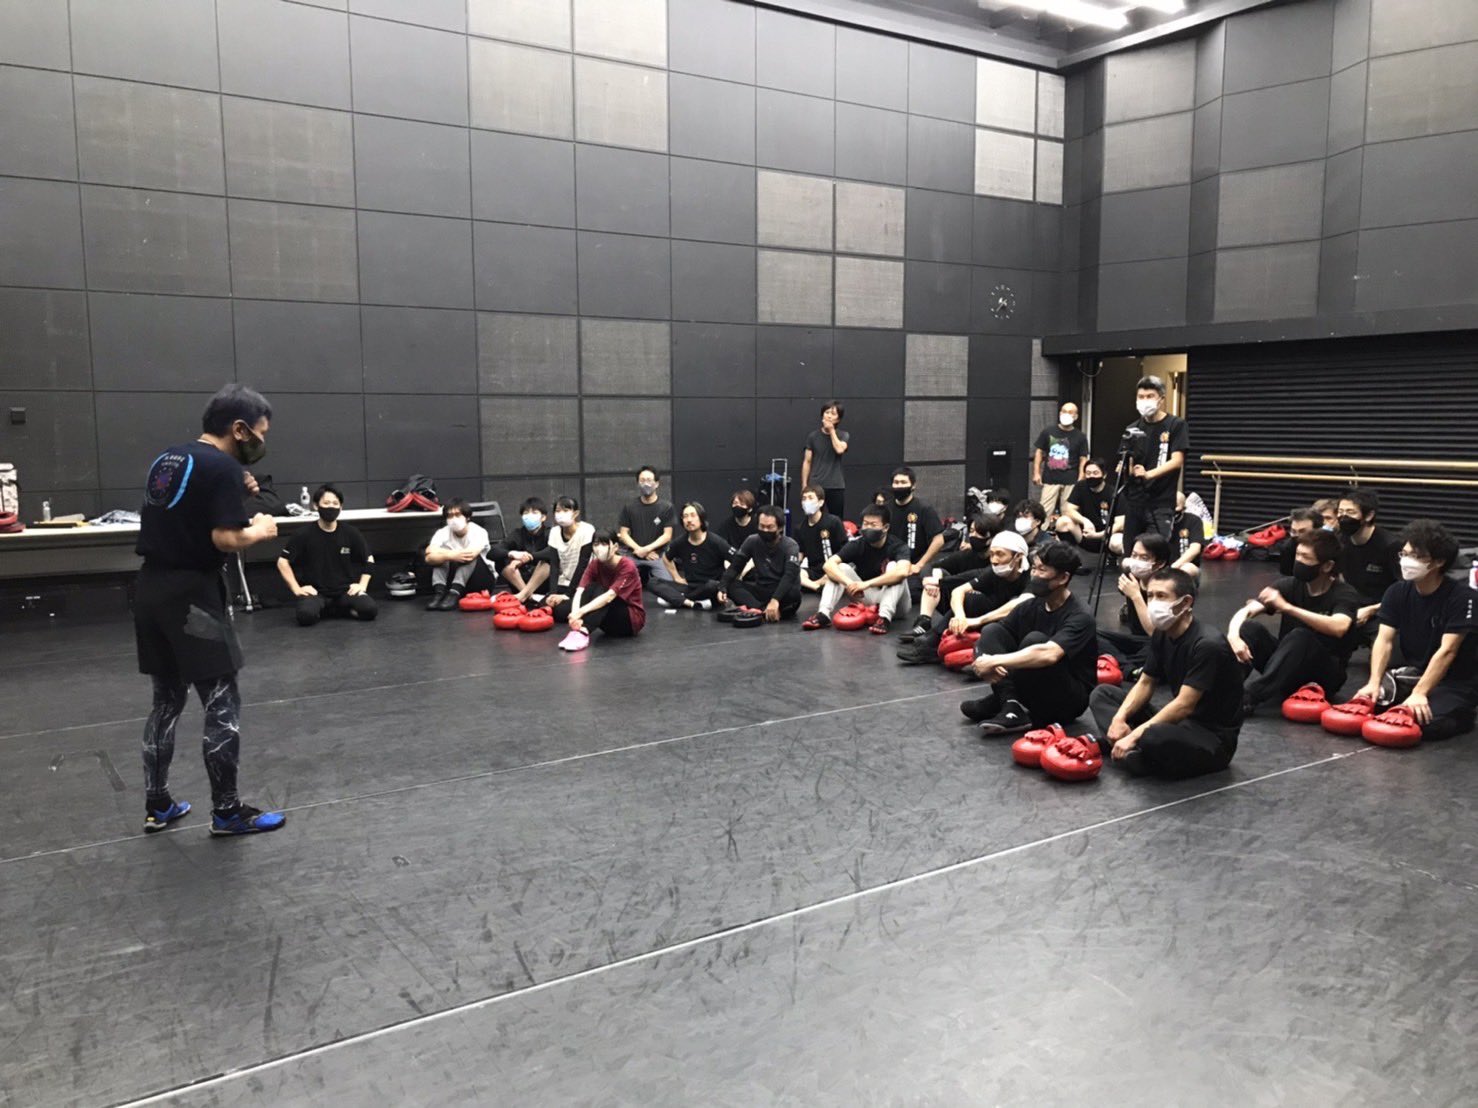 石井東吾 on Twitter: "本日はヒロ先生のジークンドーセミナーでした‼️ ブルース・リー開祖の武術の歴史を巡るという内容で、詠春拳